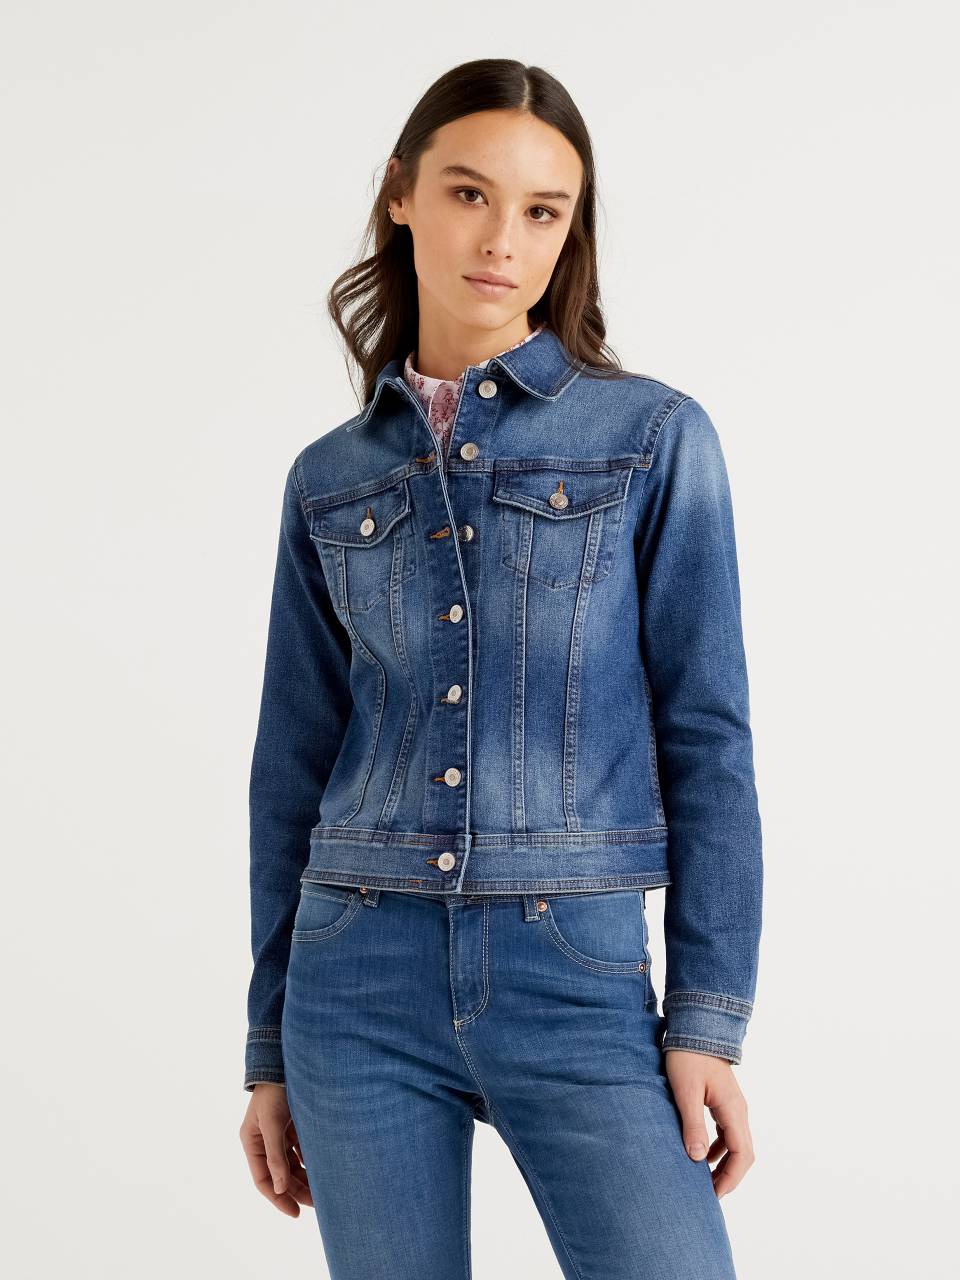 WOMEN FASHION Jackets Jacket Jean Liu·Jo jacket discount 62% Blue XL 